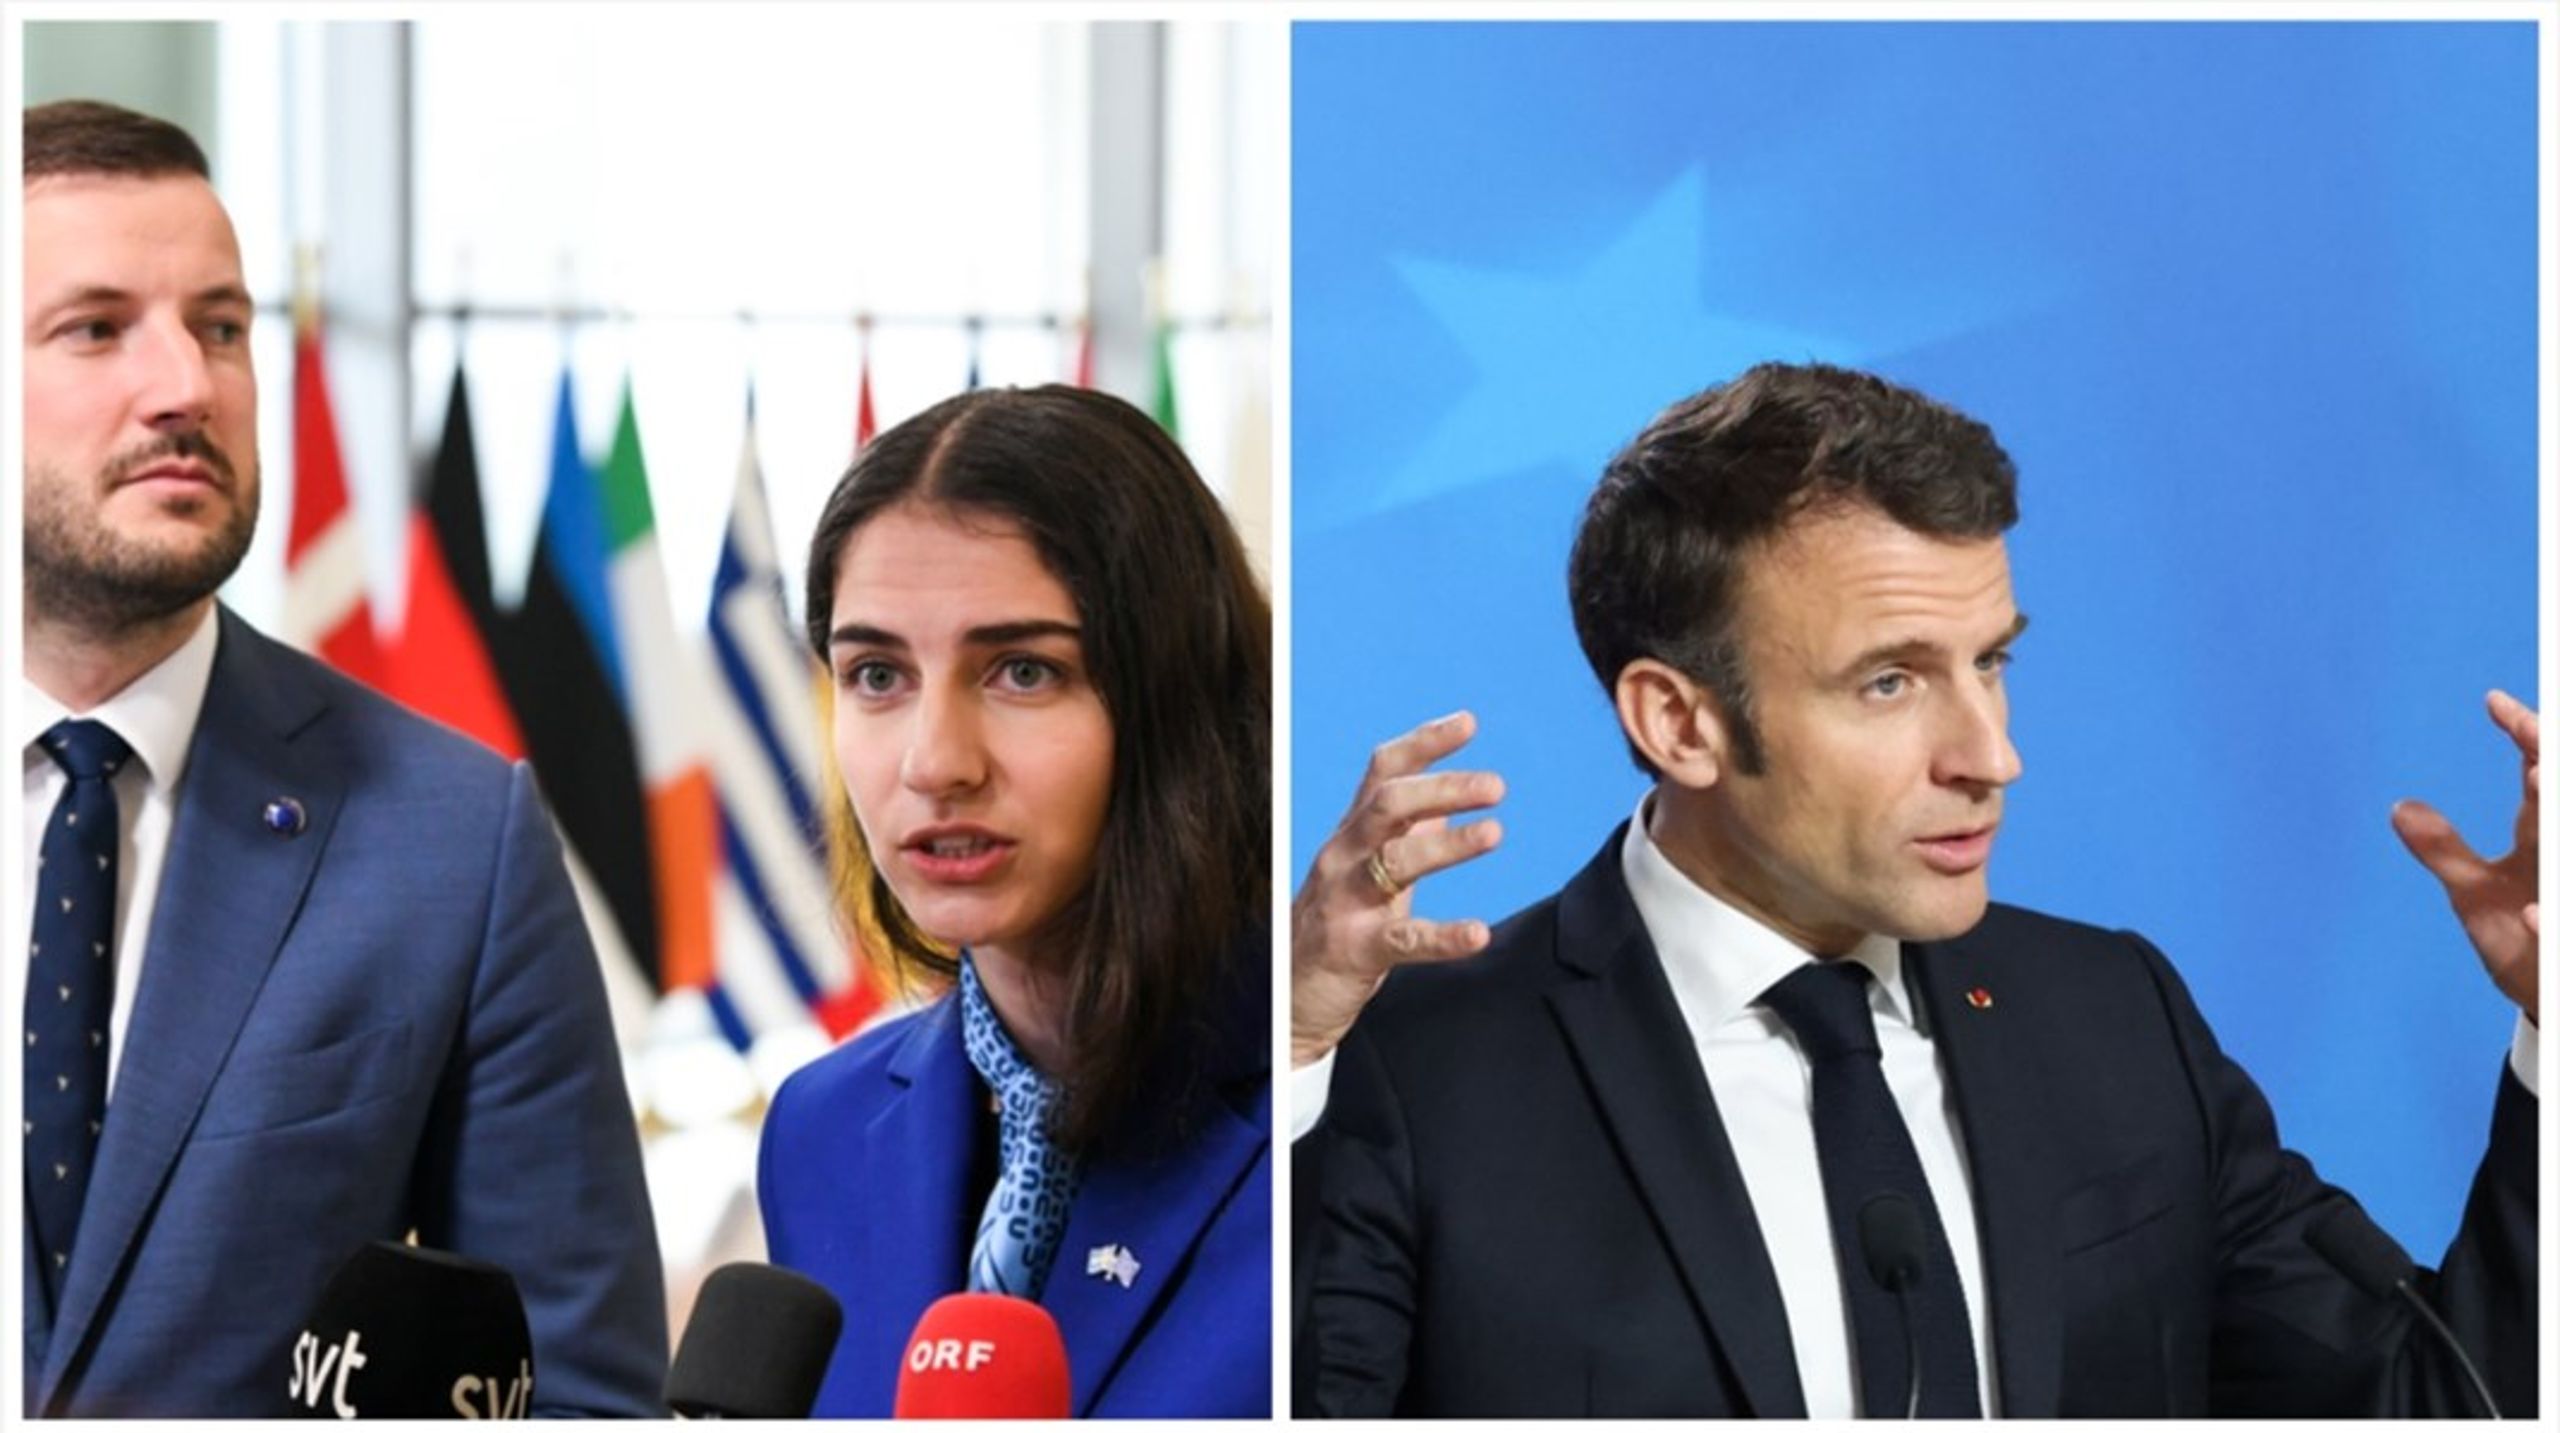 Frankrikes Macron vill se en paus på nya miljöregler, och har uppbackning i flera huvudstäder enligt det svenska ordförandeskapets rapporter. Men Romina Pourmokhtari anser att bland andra miljökommissionären inte ska bromsas upp. <br>